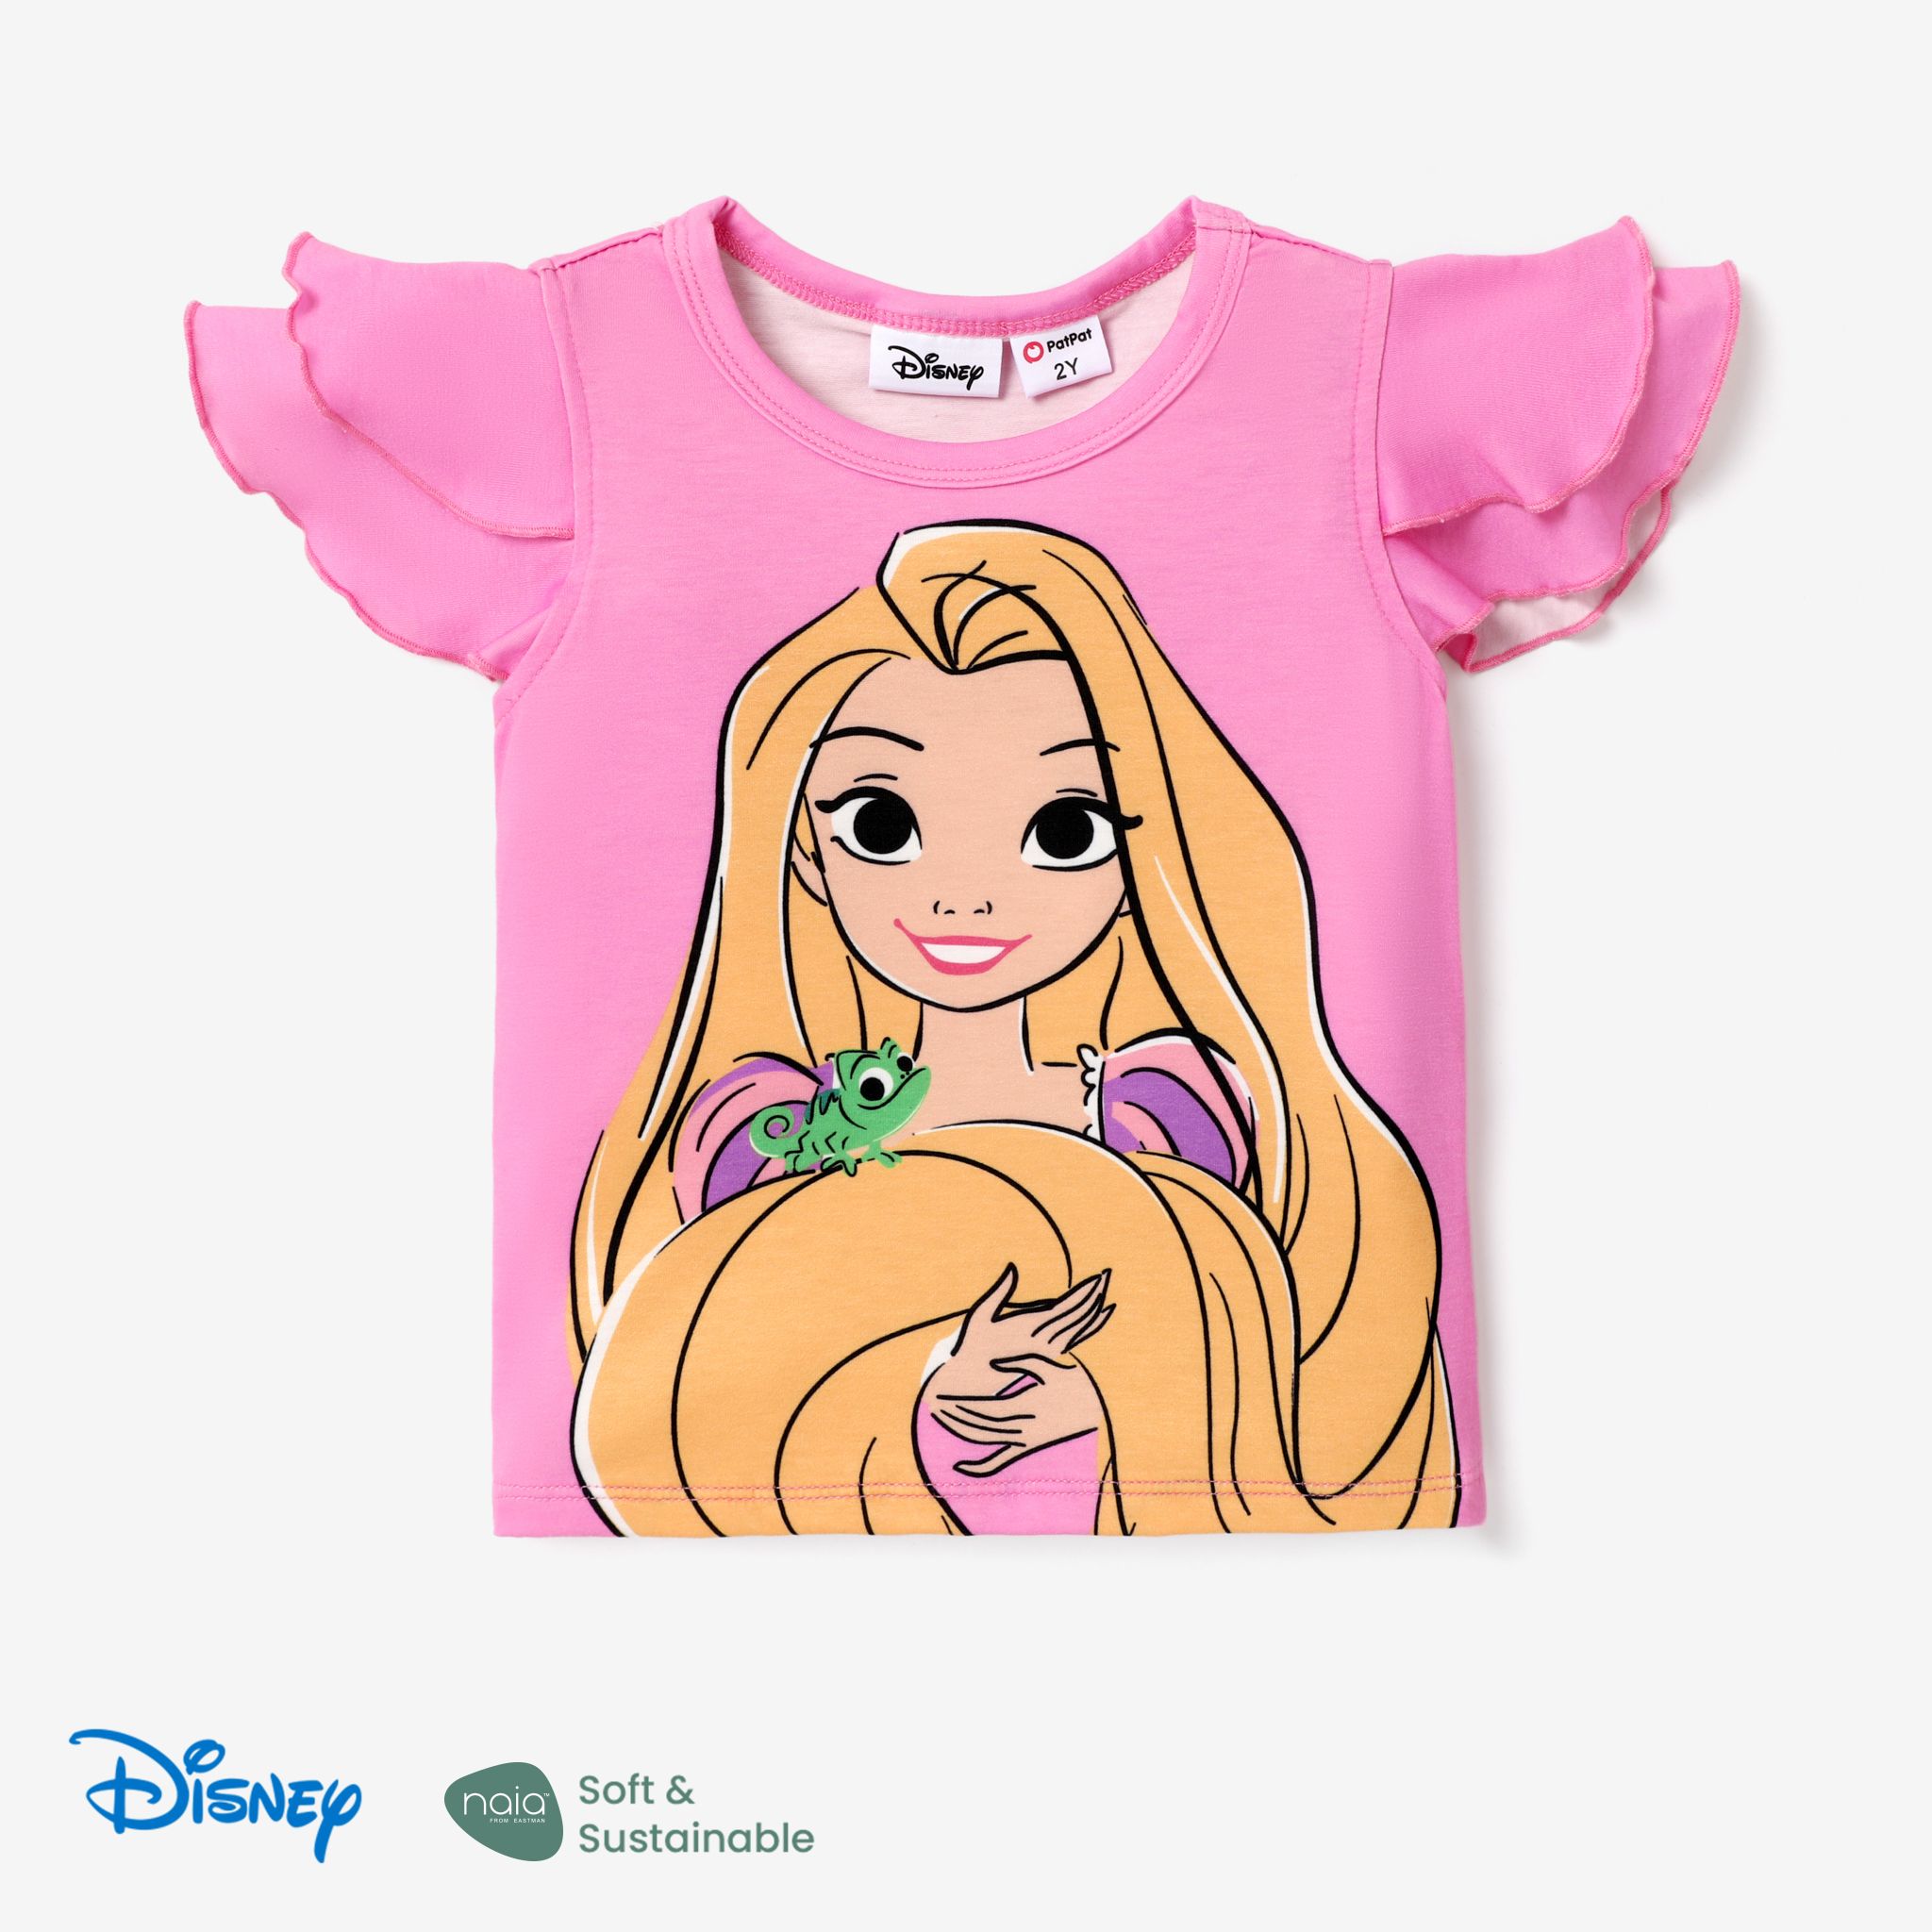 Disney Princess Toddler Girl Naiaâ¢ Character Print Ruffled Short-sleeve Tee